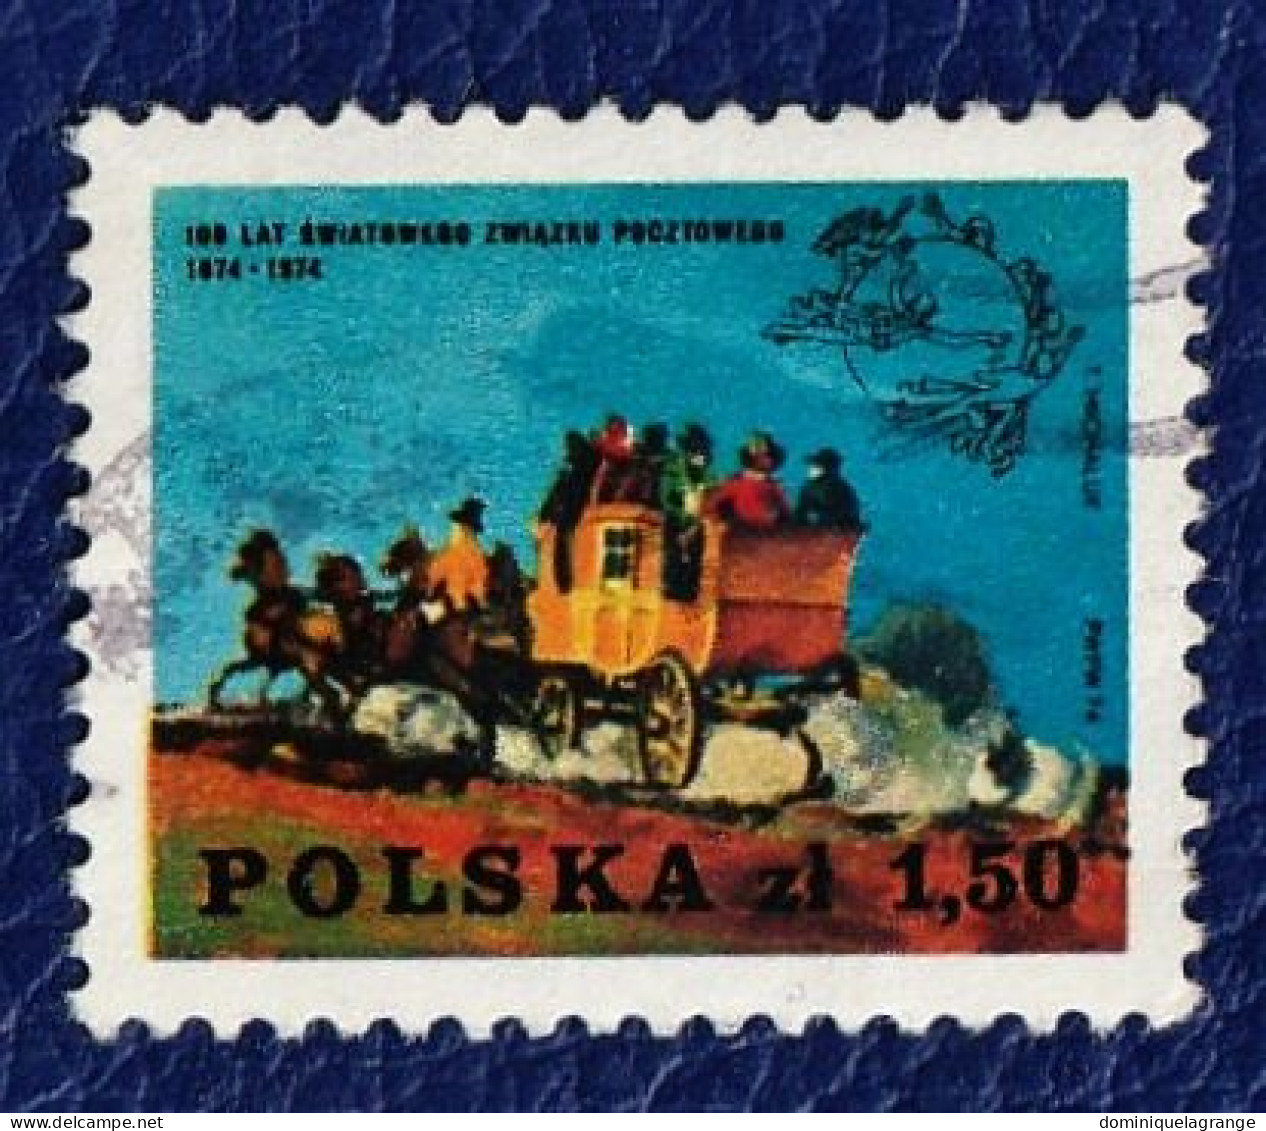 10 timbres de Pologne "automobiles" de 1973 à 1980